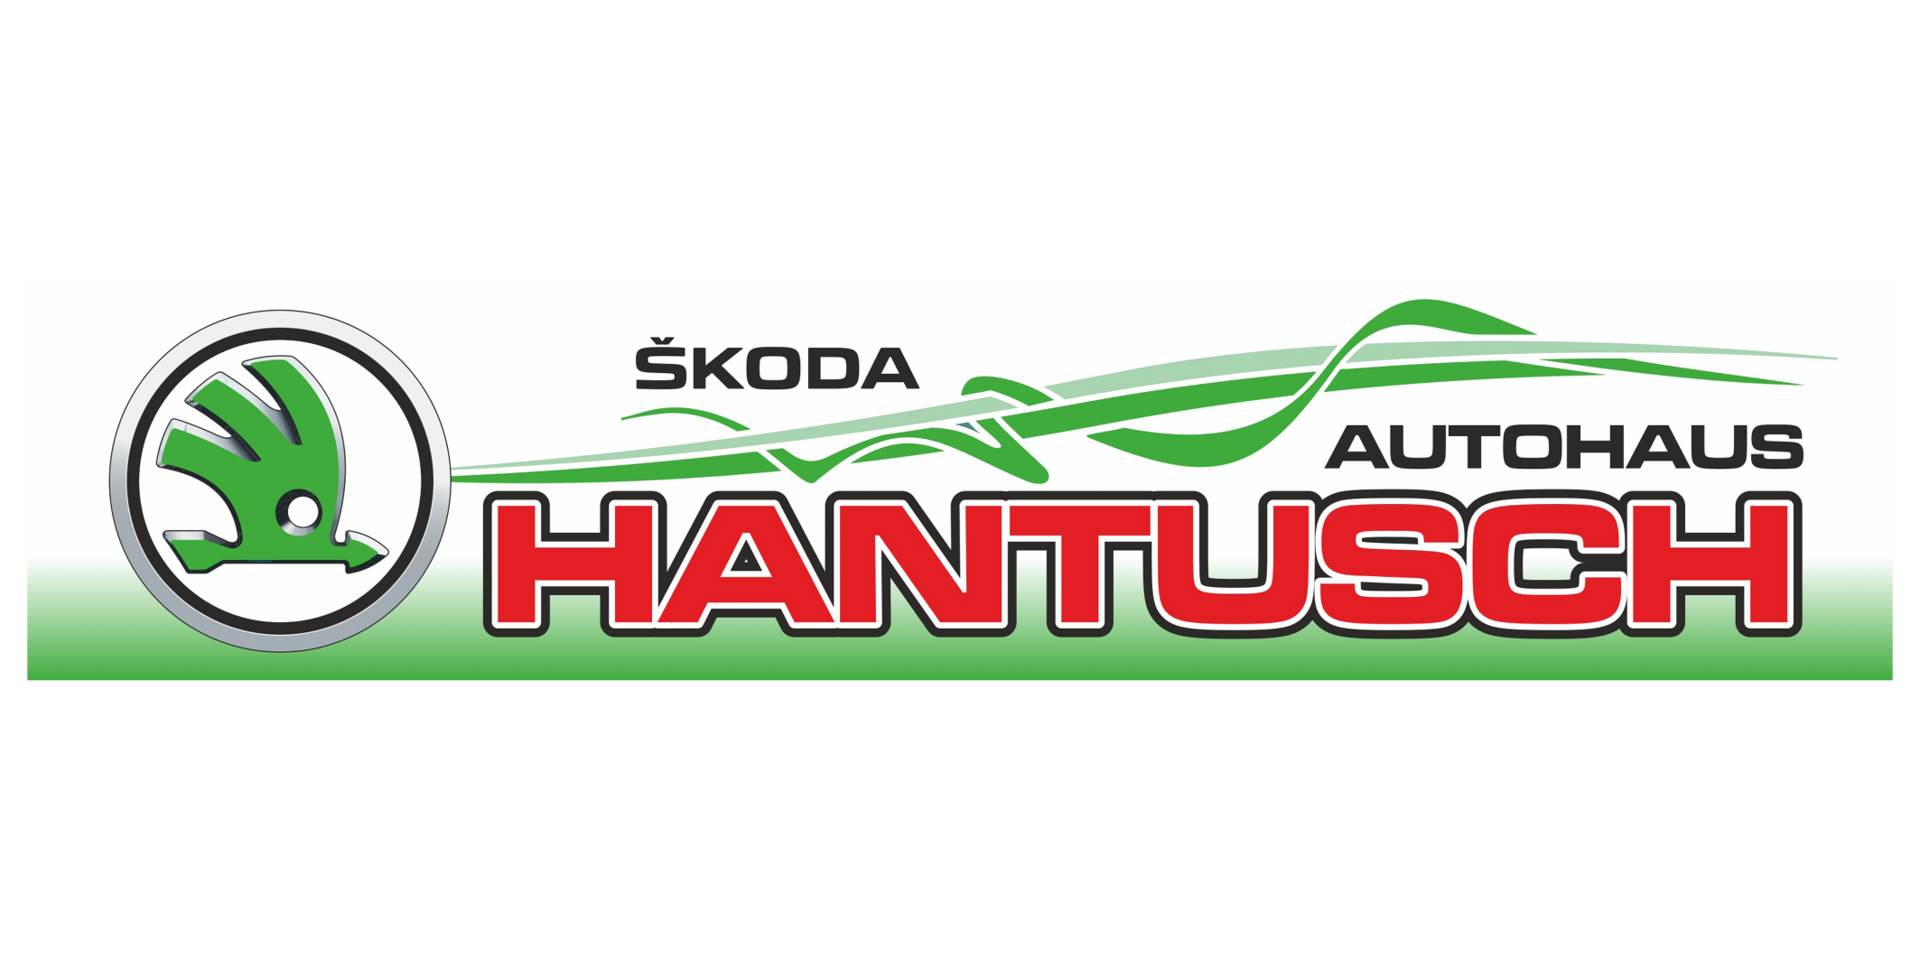 Autohaus Hantusch